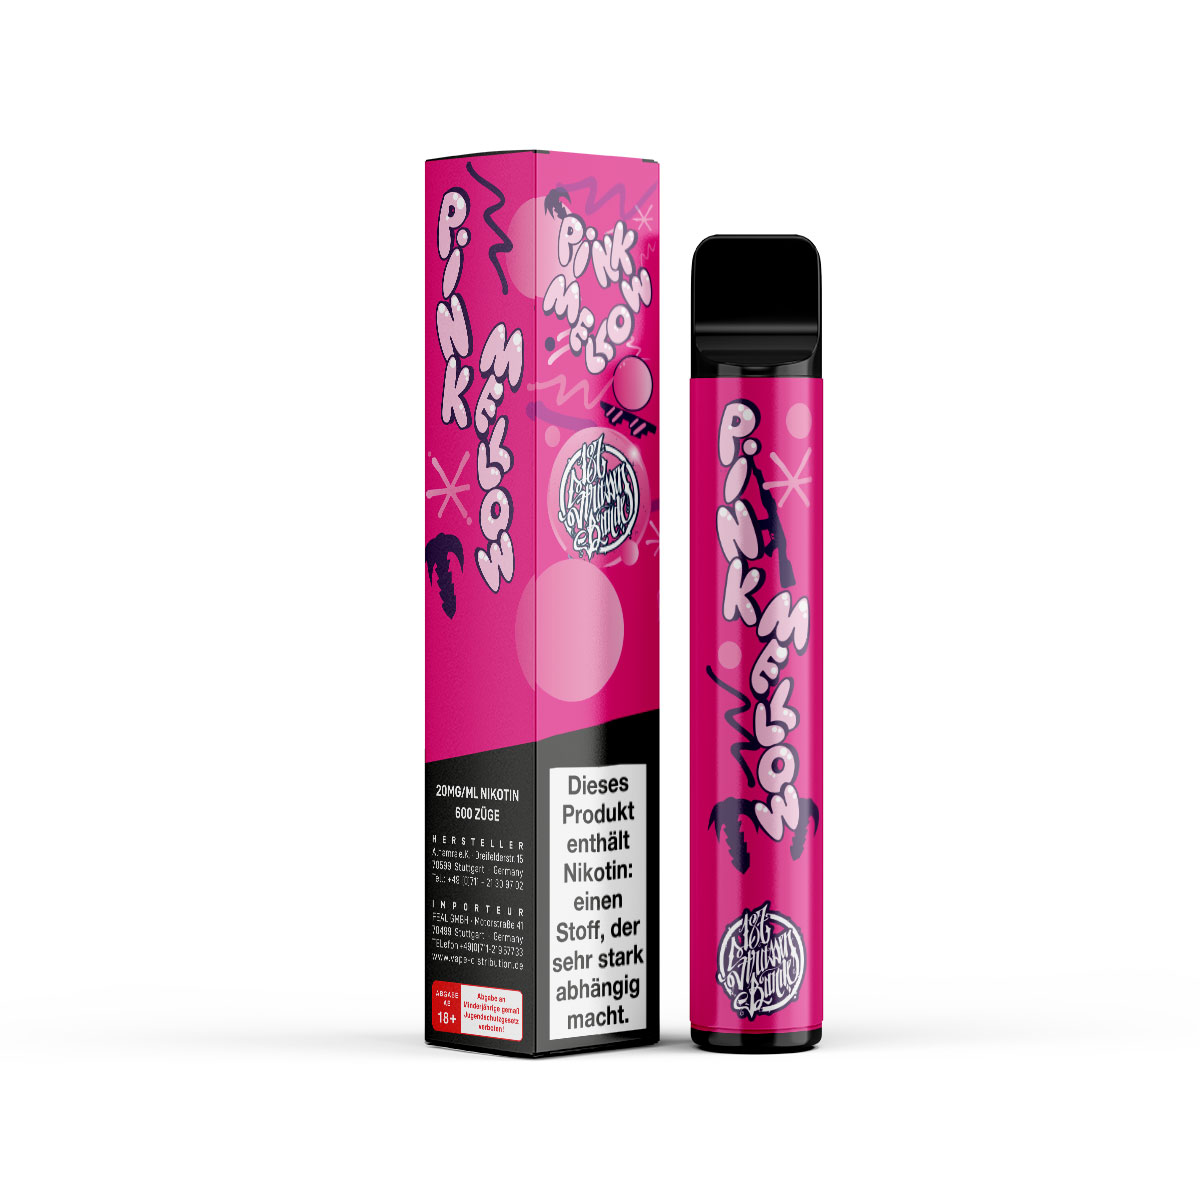 187 Strassenbande - Einweg E Zigarette - Disposable - Pink Mellow 20mg/ml